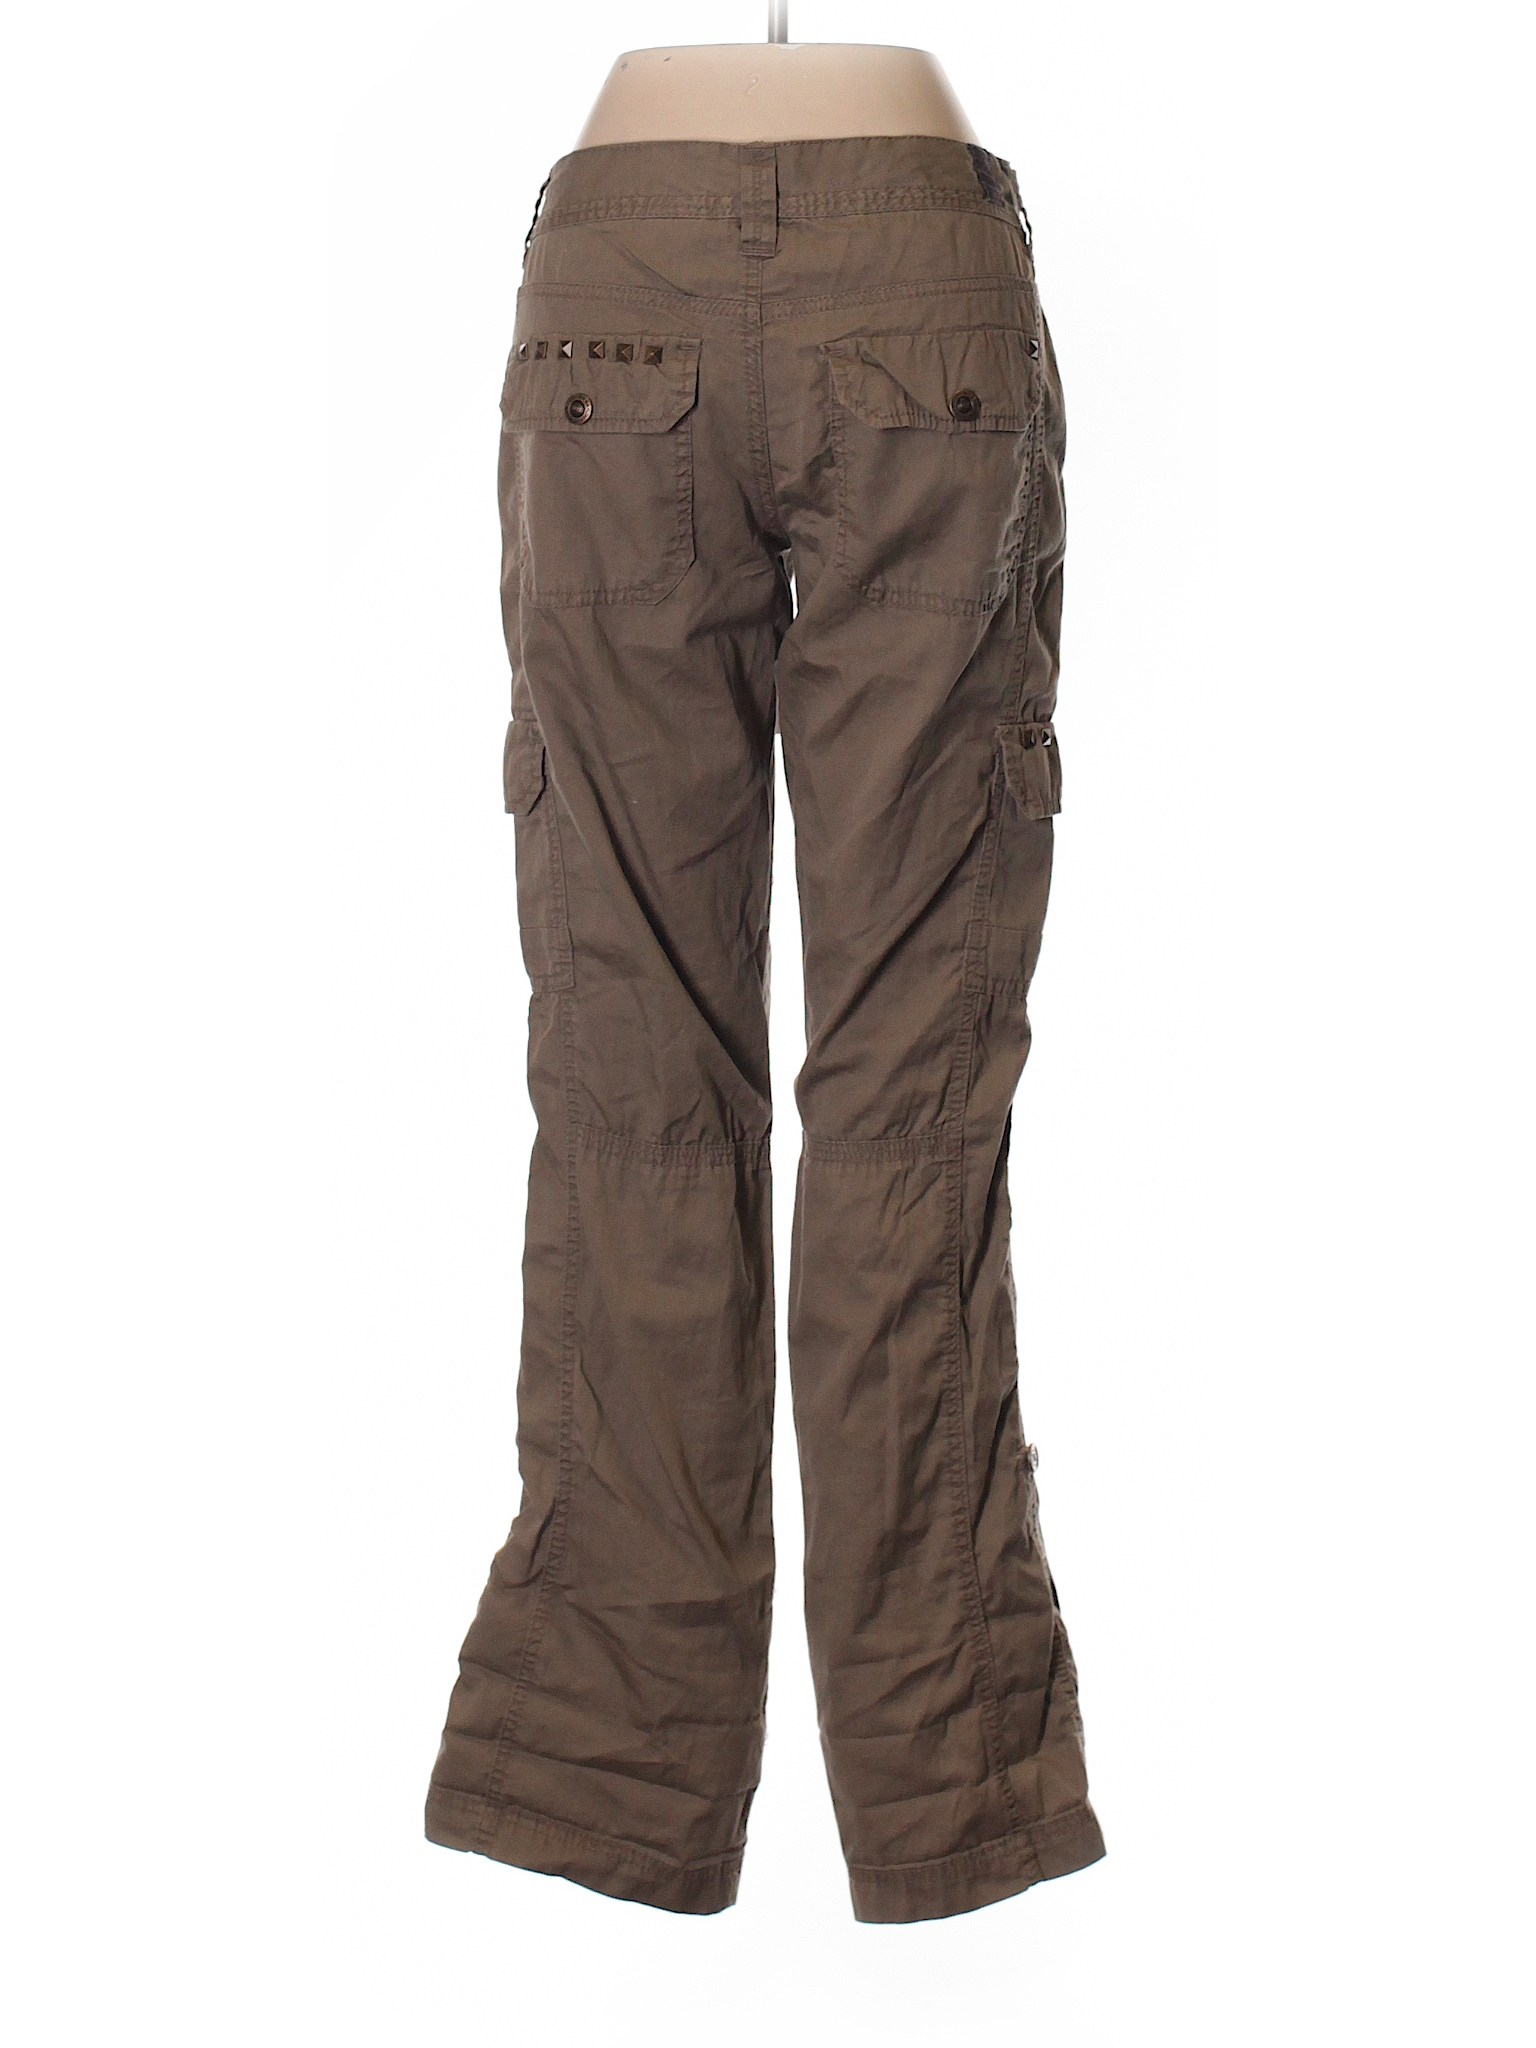 SUPPLIES by UNIONBAY Women's Skinny Stretch Cargo Pants (Khaki, 6) -  Walmart.com